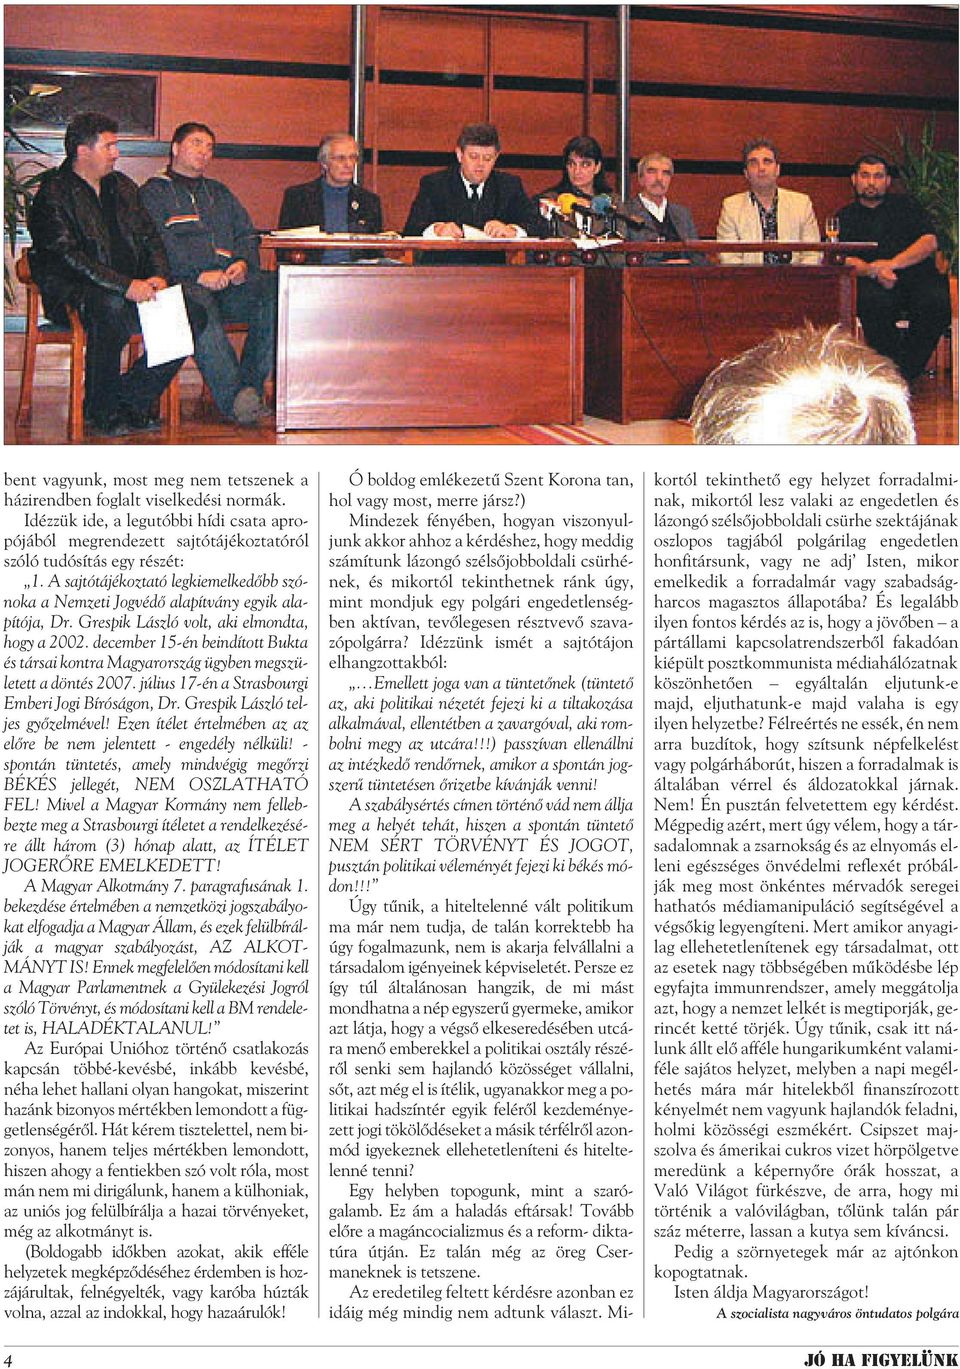 december 15-én beindított Bukta és társai kontra Magyarország ügyben megszületett a döntés 2007. július 17-én a Strasbourgi Emberi Jogi Bíróságon, Dr. Grespik László teljes gyõzelmével!